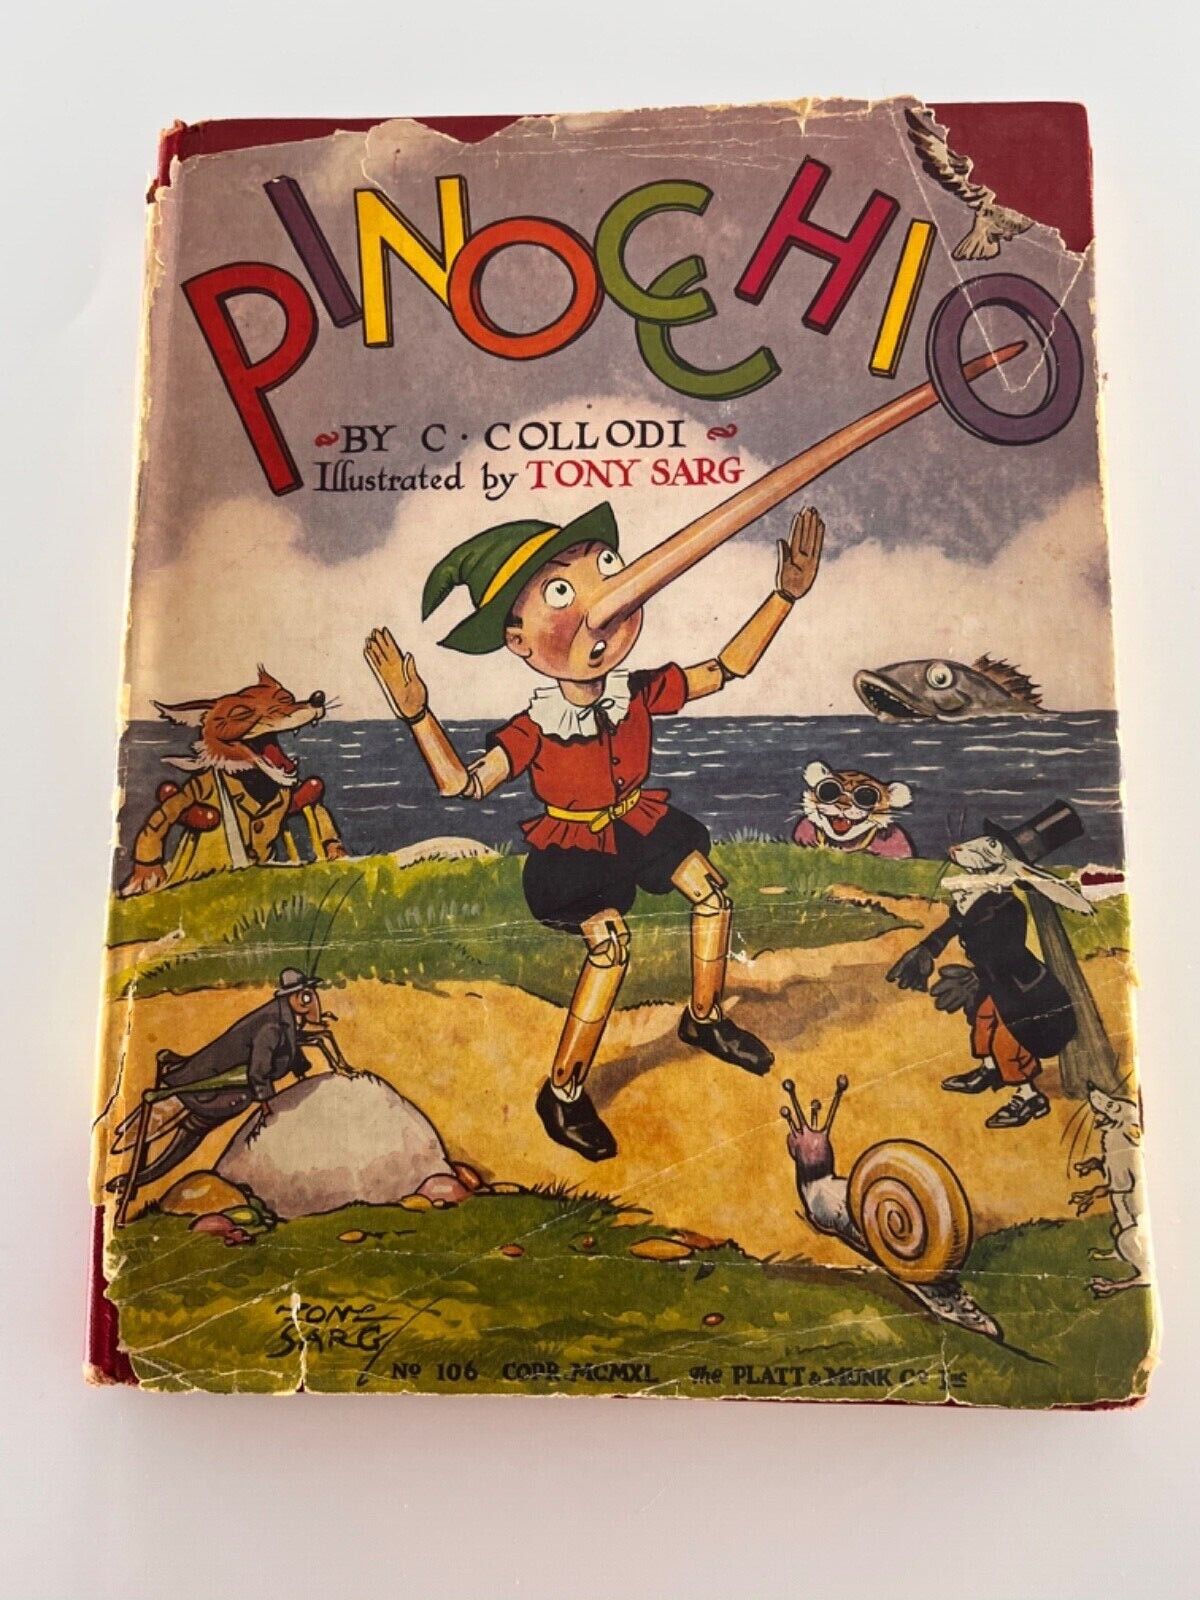 C. Collodi, Pinocchio. Illus. Tony Sarg, 1940. Hardcover Book/DJ. Classic 